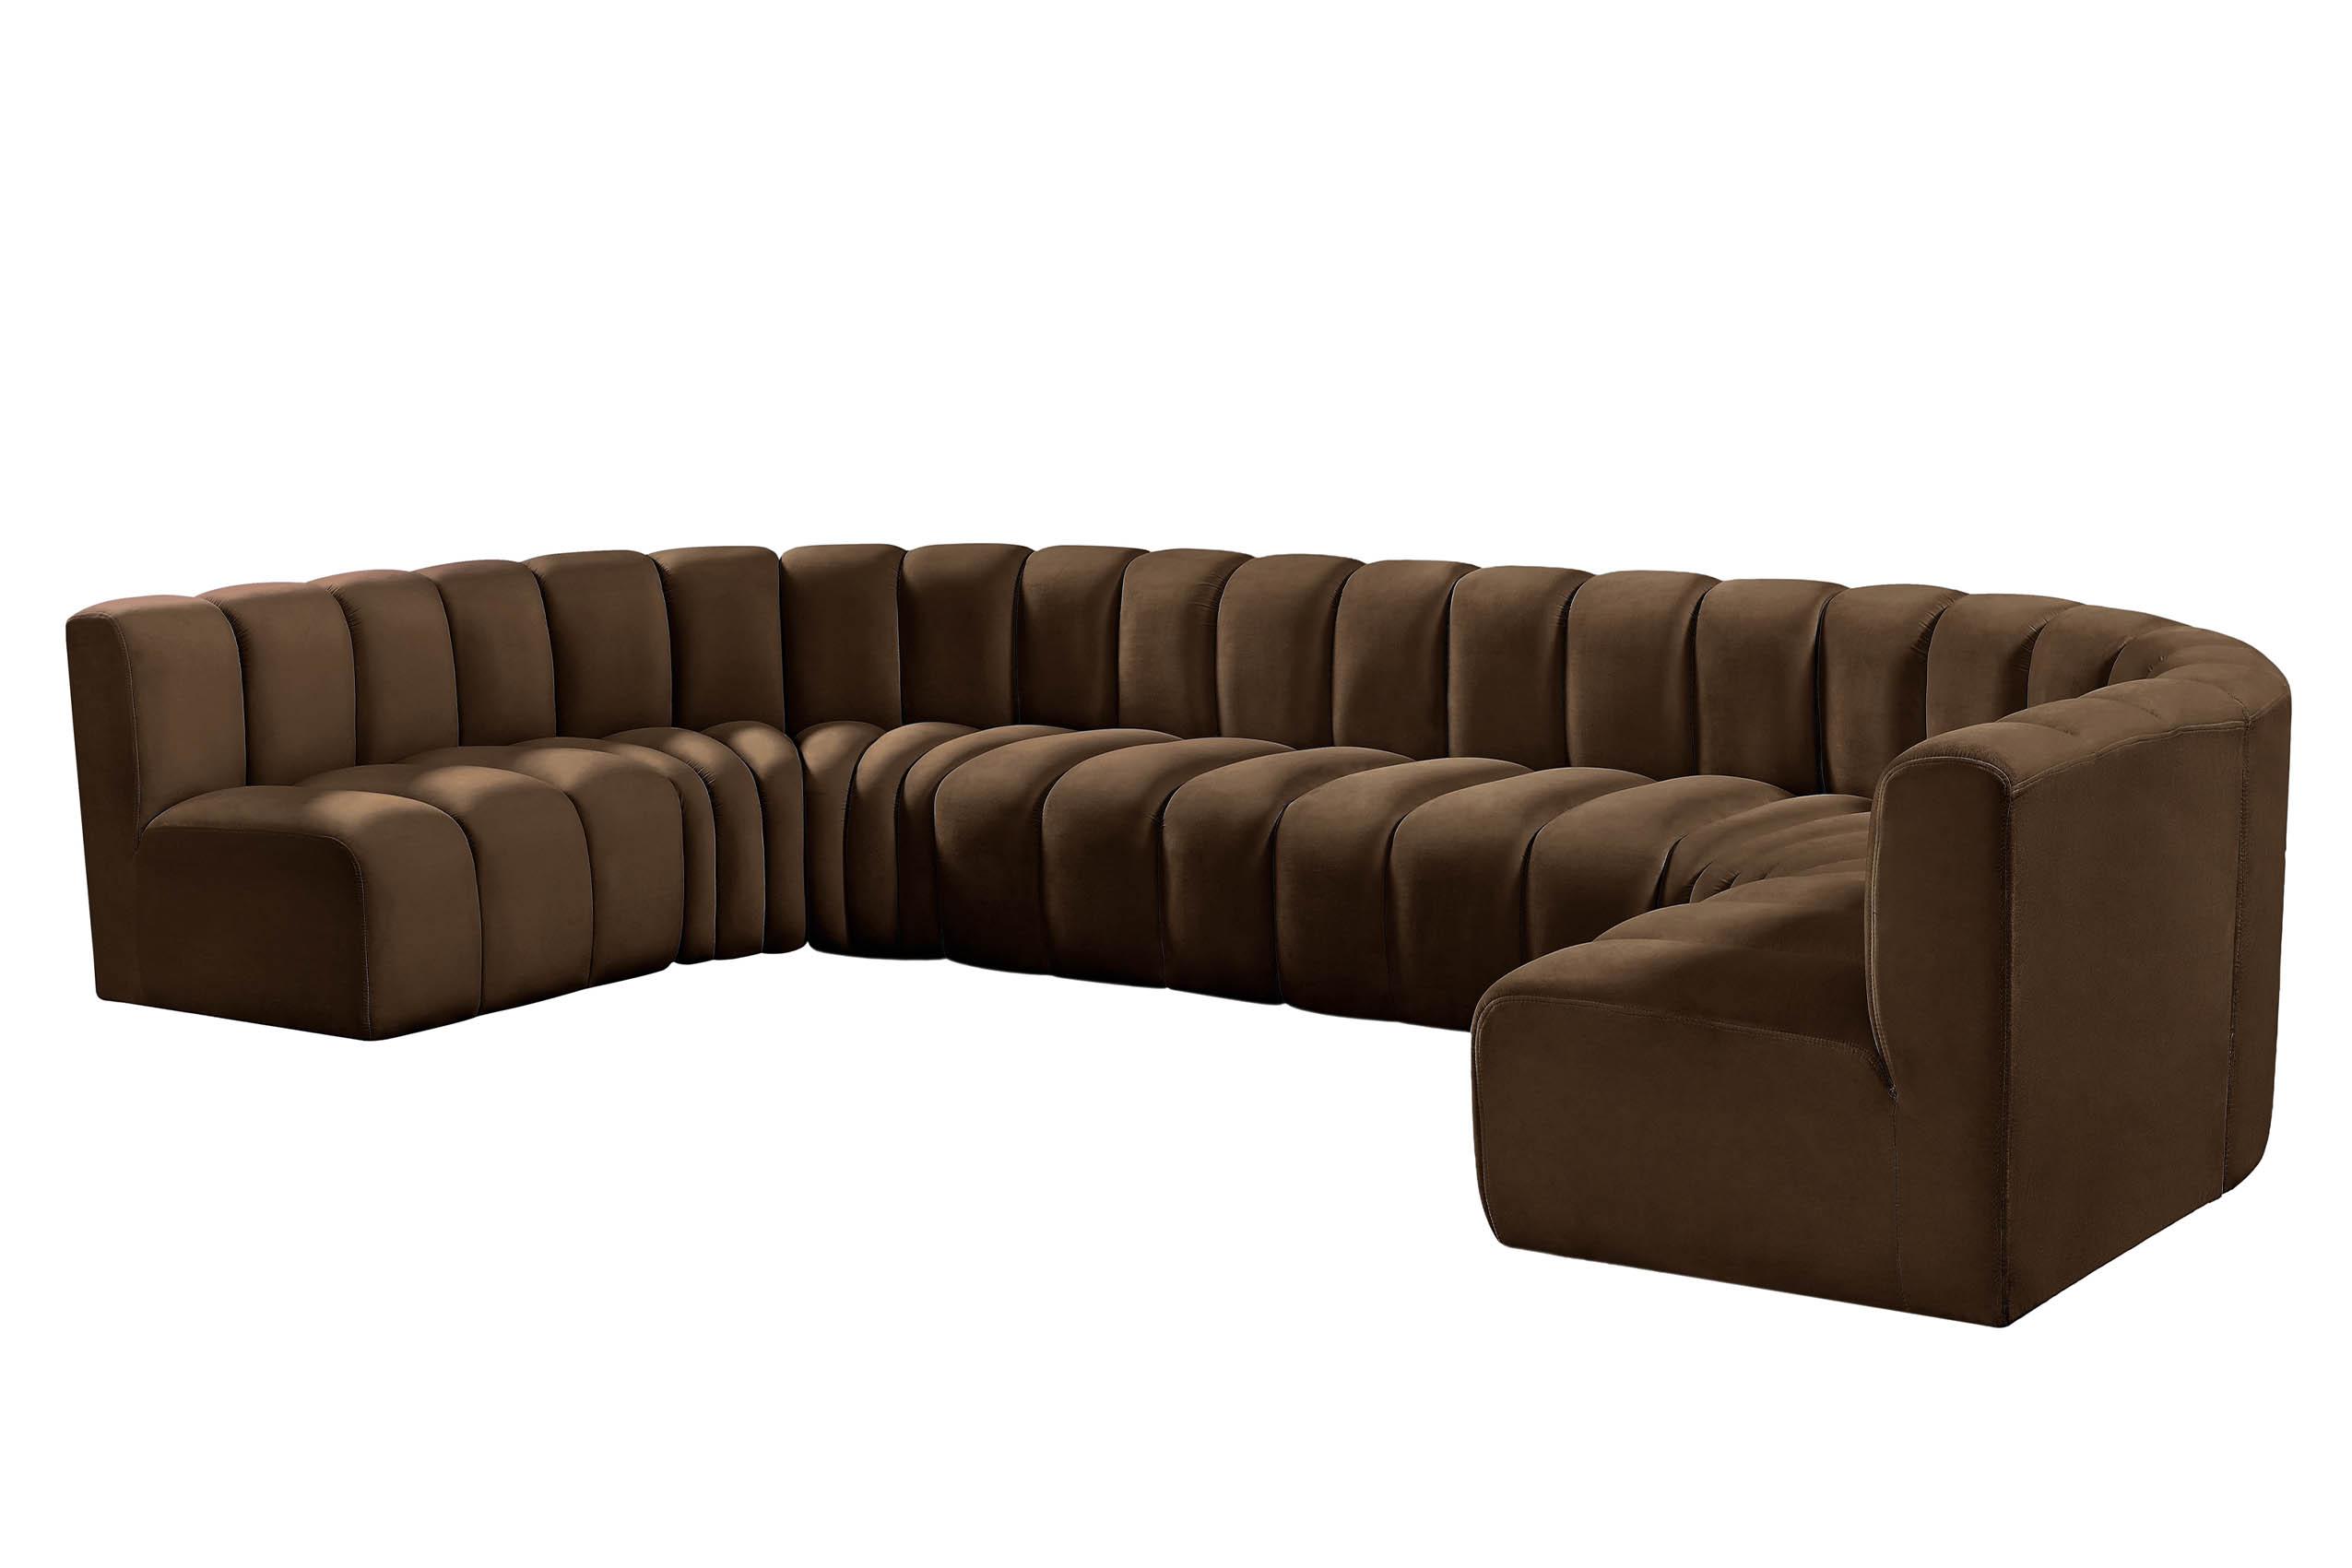 

    
103Brown-S8A Meridian Furniture Modular Sectional Sofa
